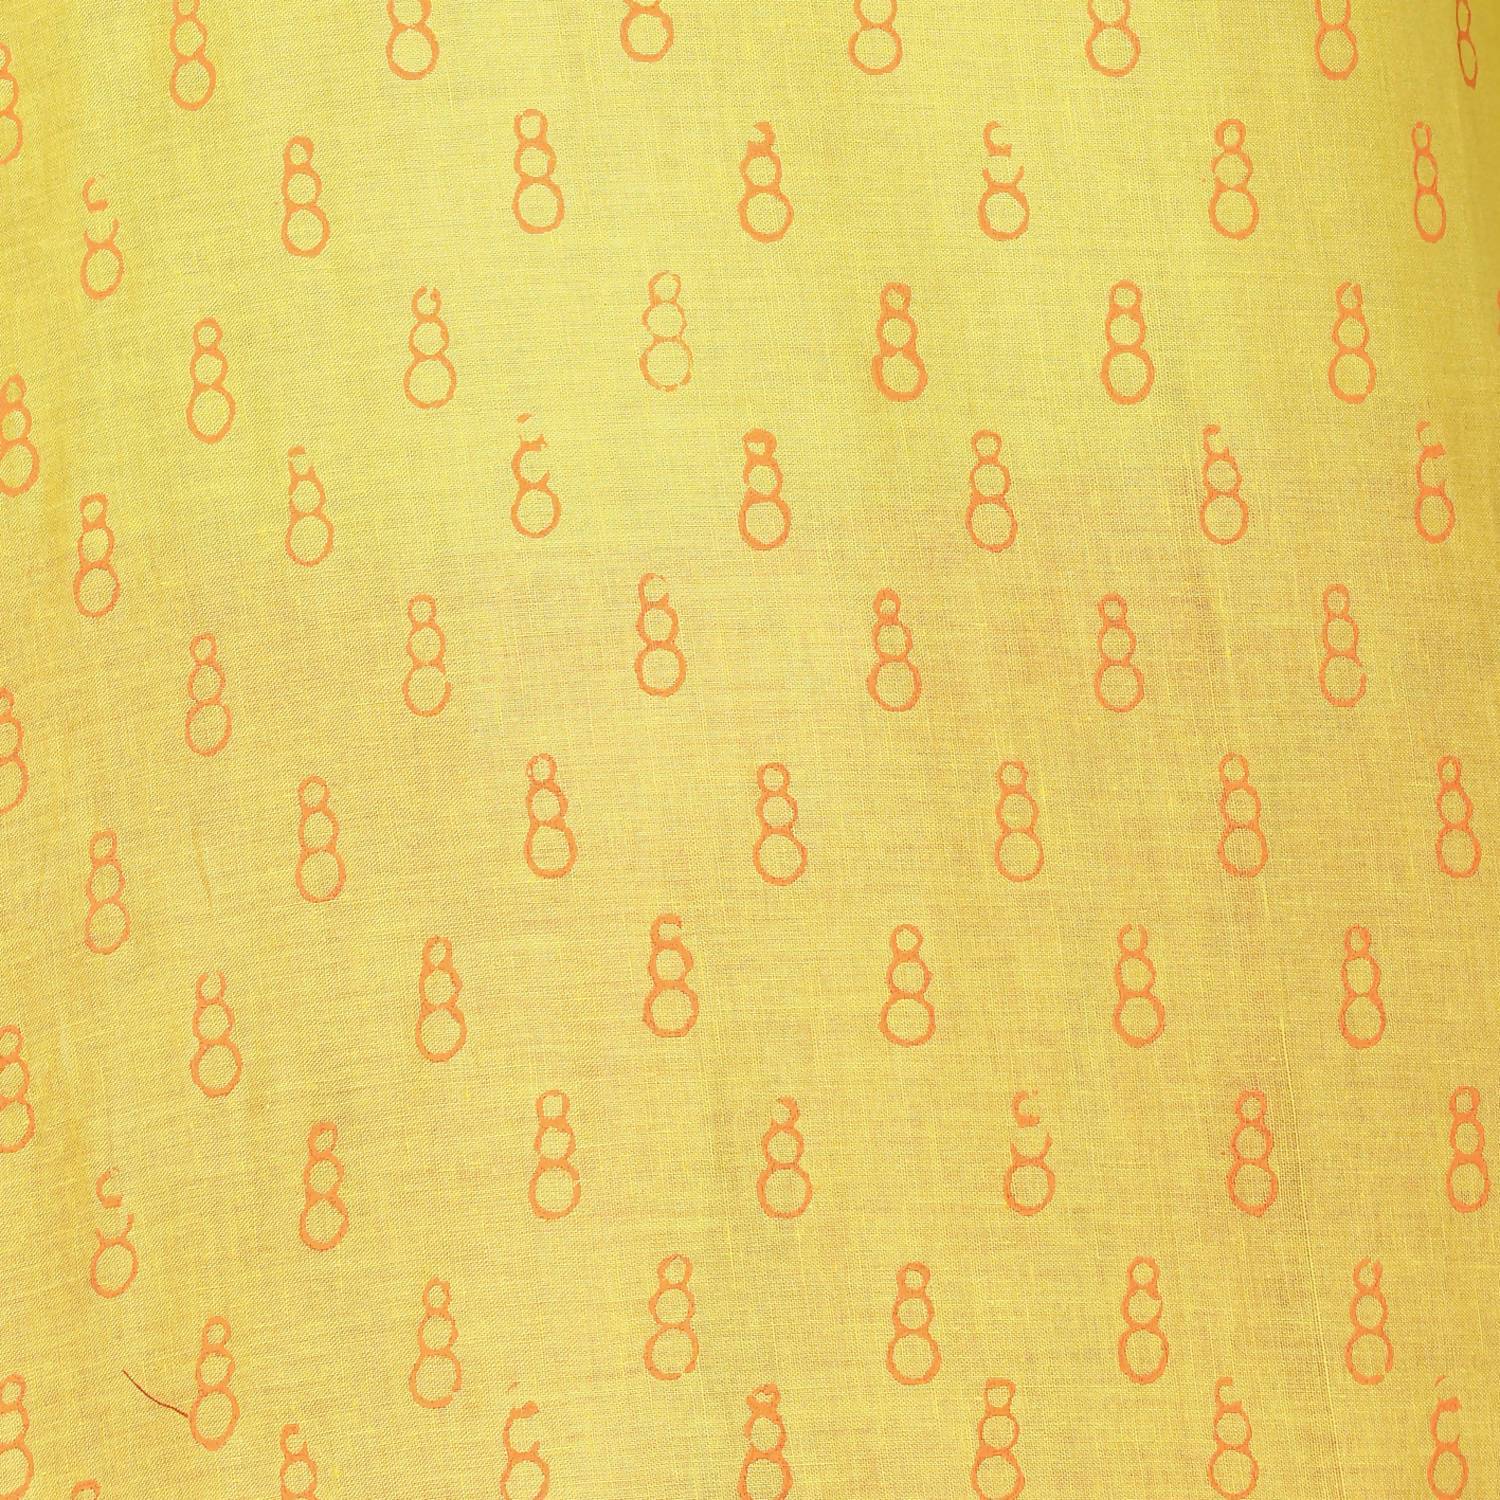 Women's Yellow 100% Cotton Hand Block Print Straight Kurta Only - Cheera